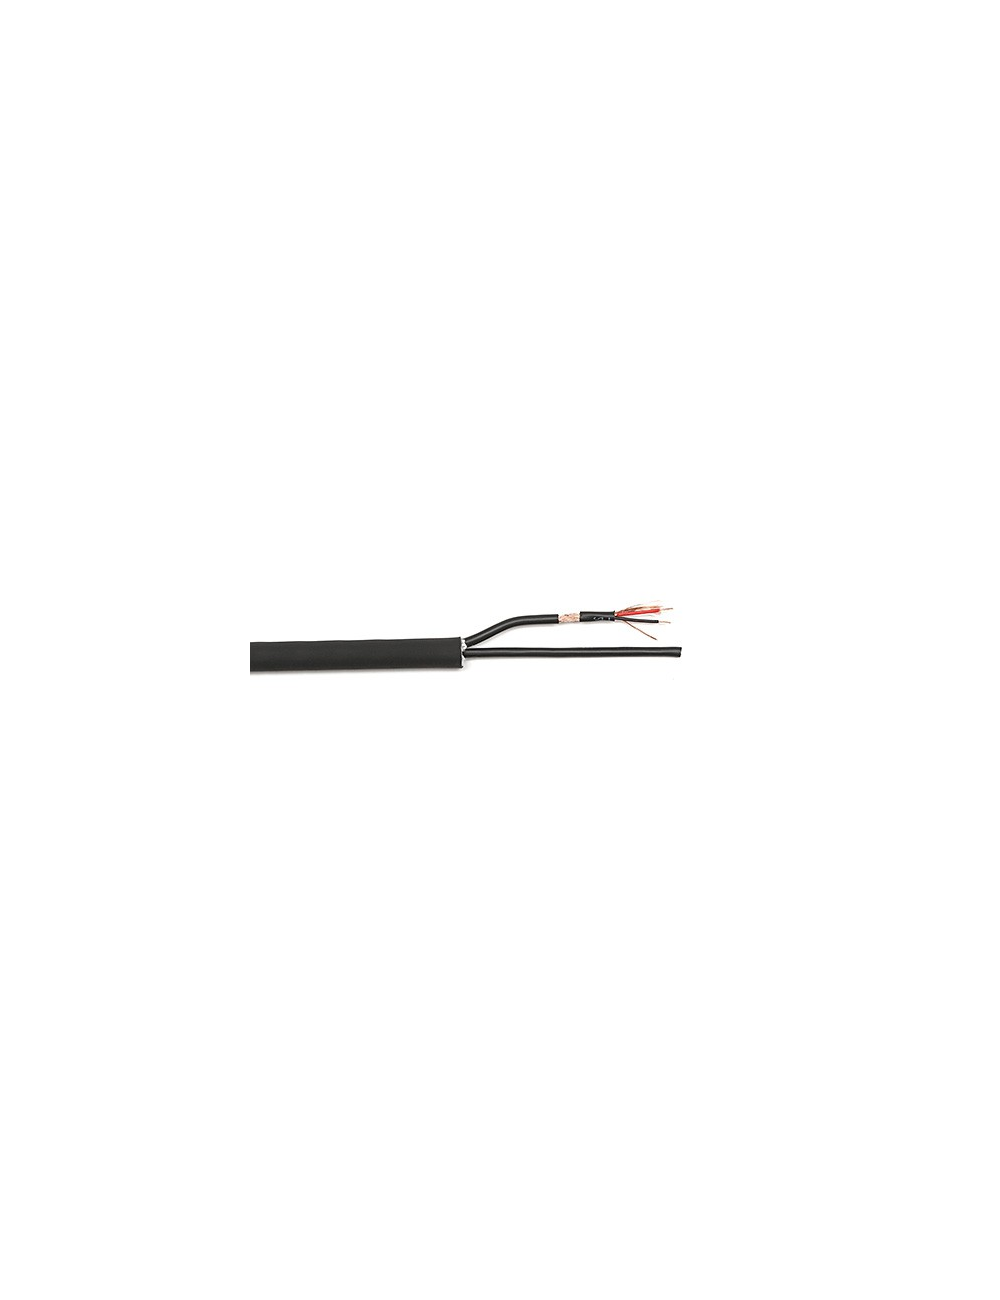 Analog multipair cable 2 x 0.22 (per meter)